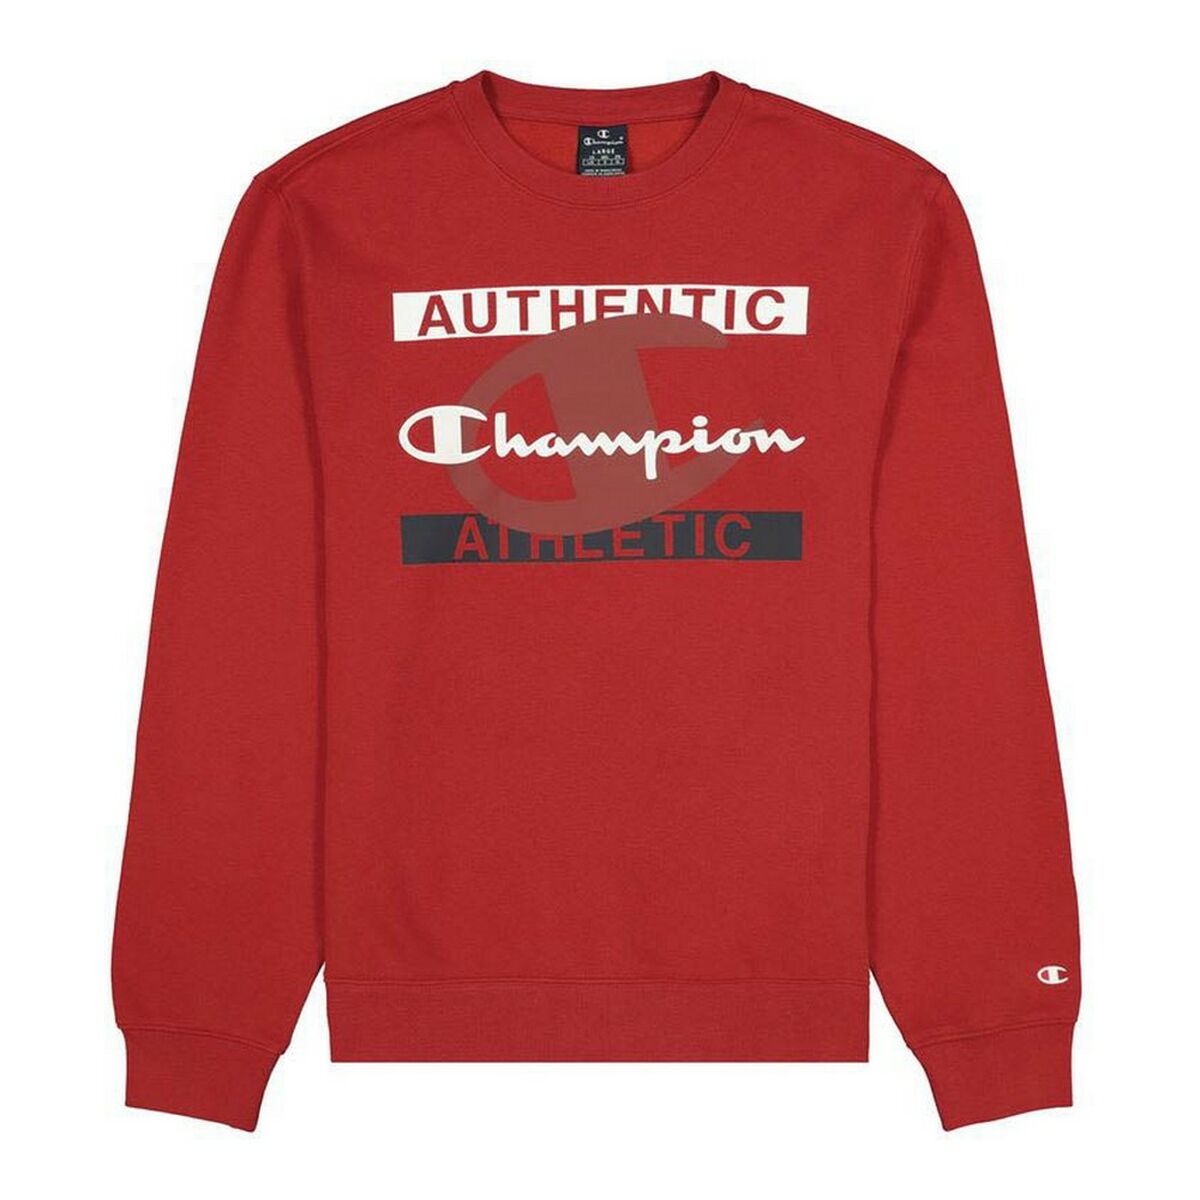 Kaufe Herren Sweater ohne Kapuze Champion Authentic Athletic Rot bei AWK Flagship um € 50.00